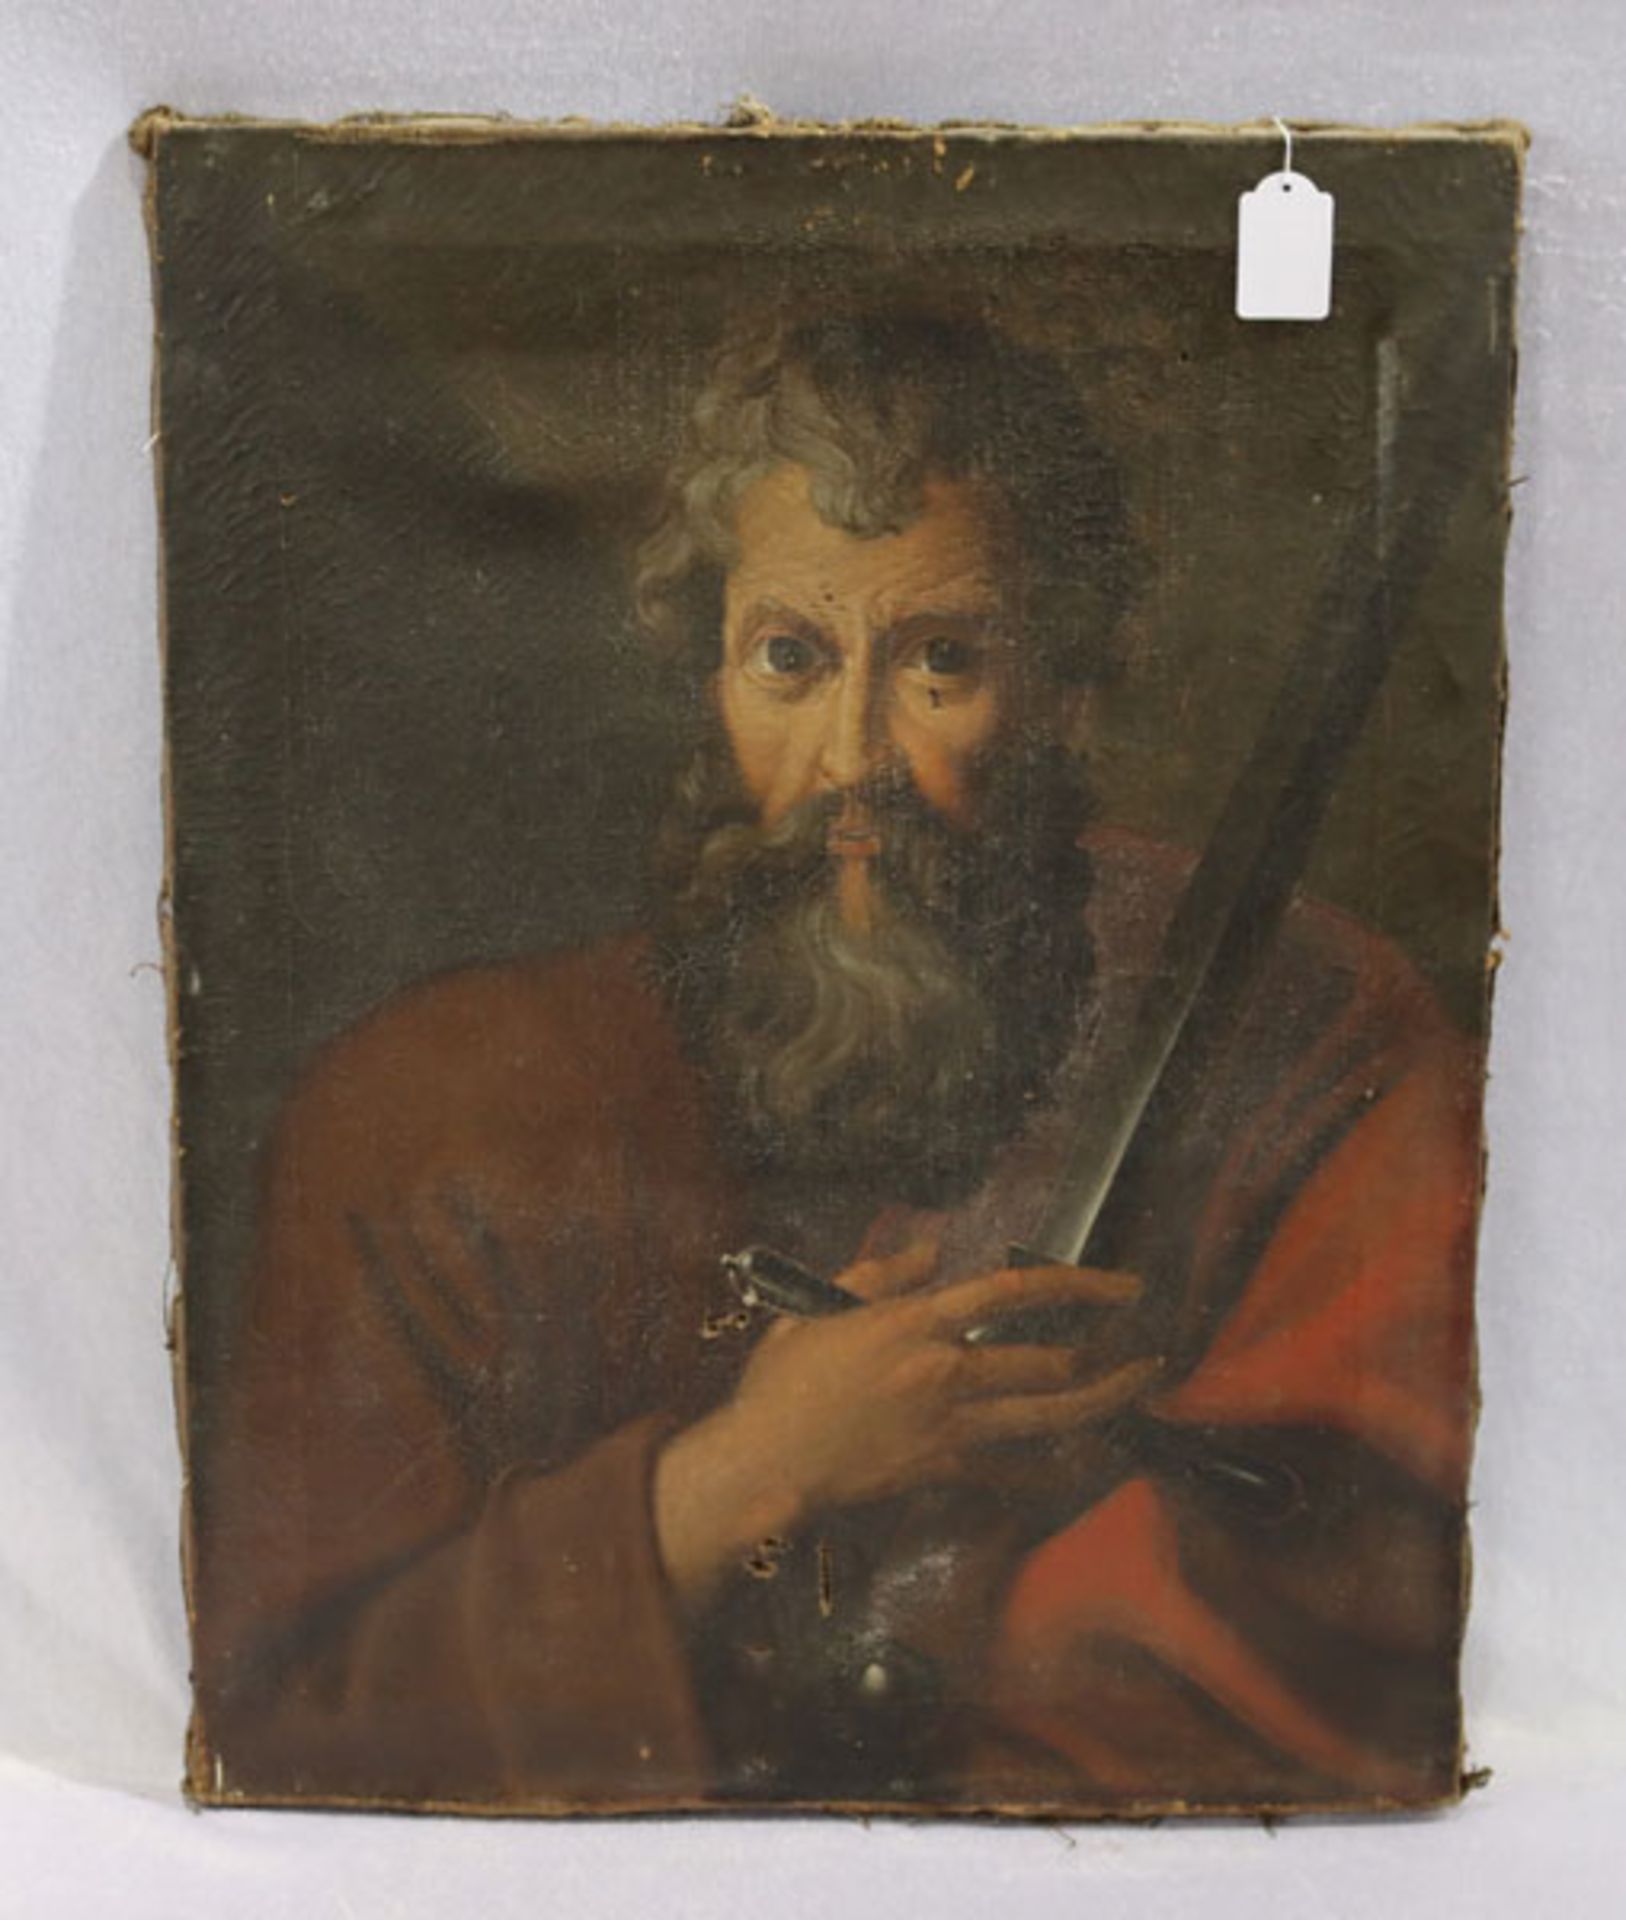 Gemälde ÖL/LW 'Paulus von Tarsus', LW und Bildoberfläche beschädigt/Altersspuren, 18./19.